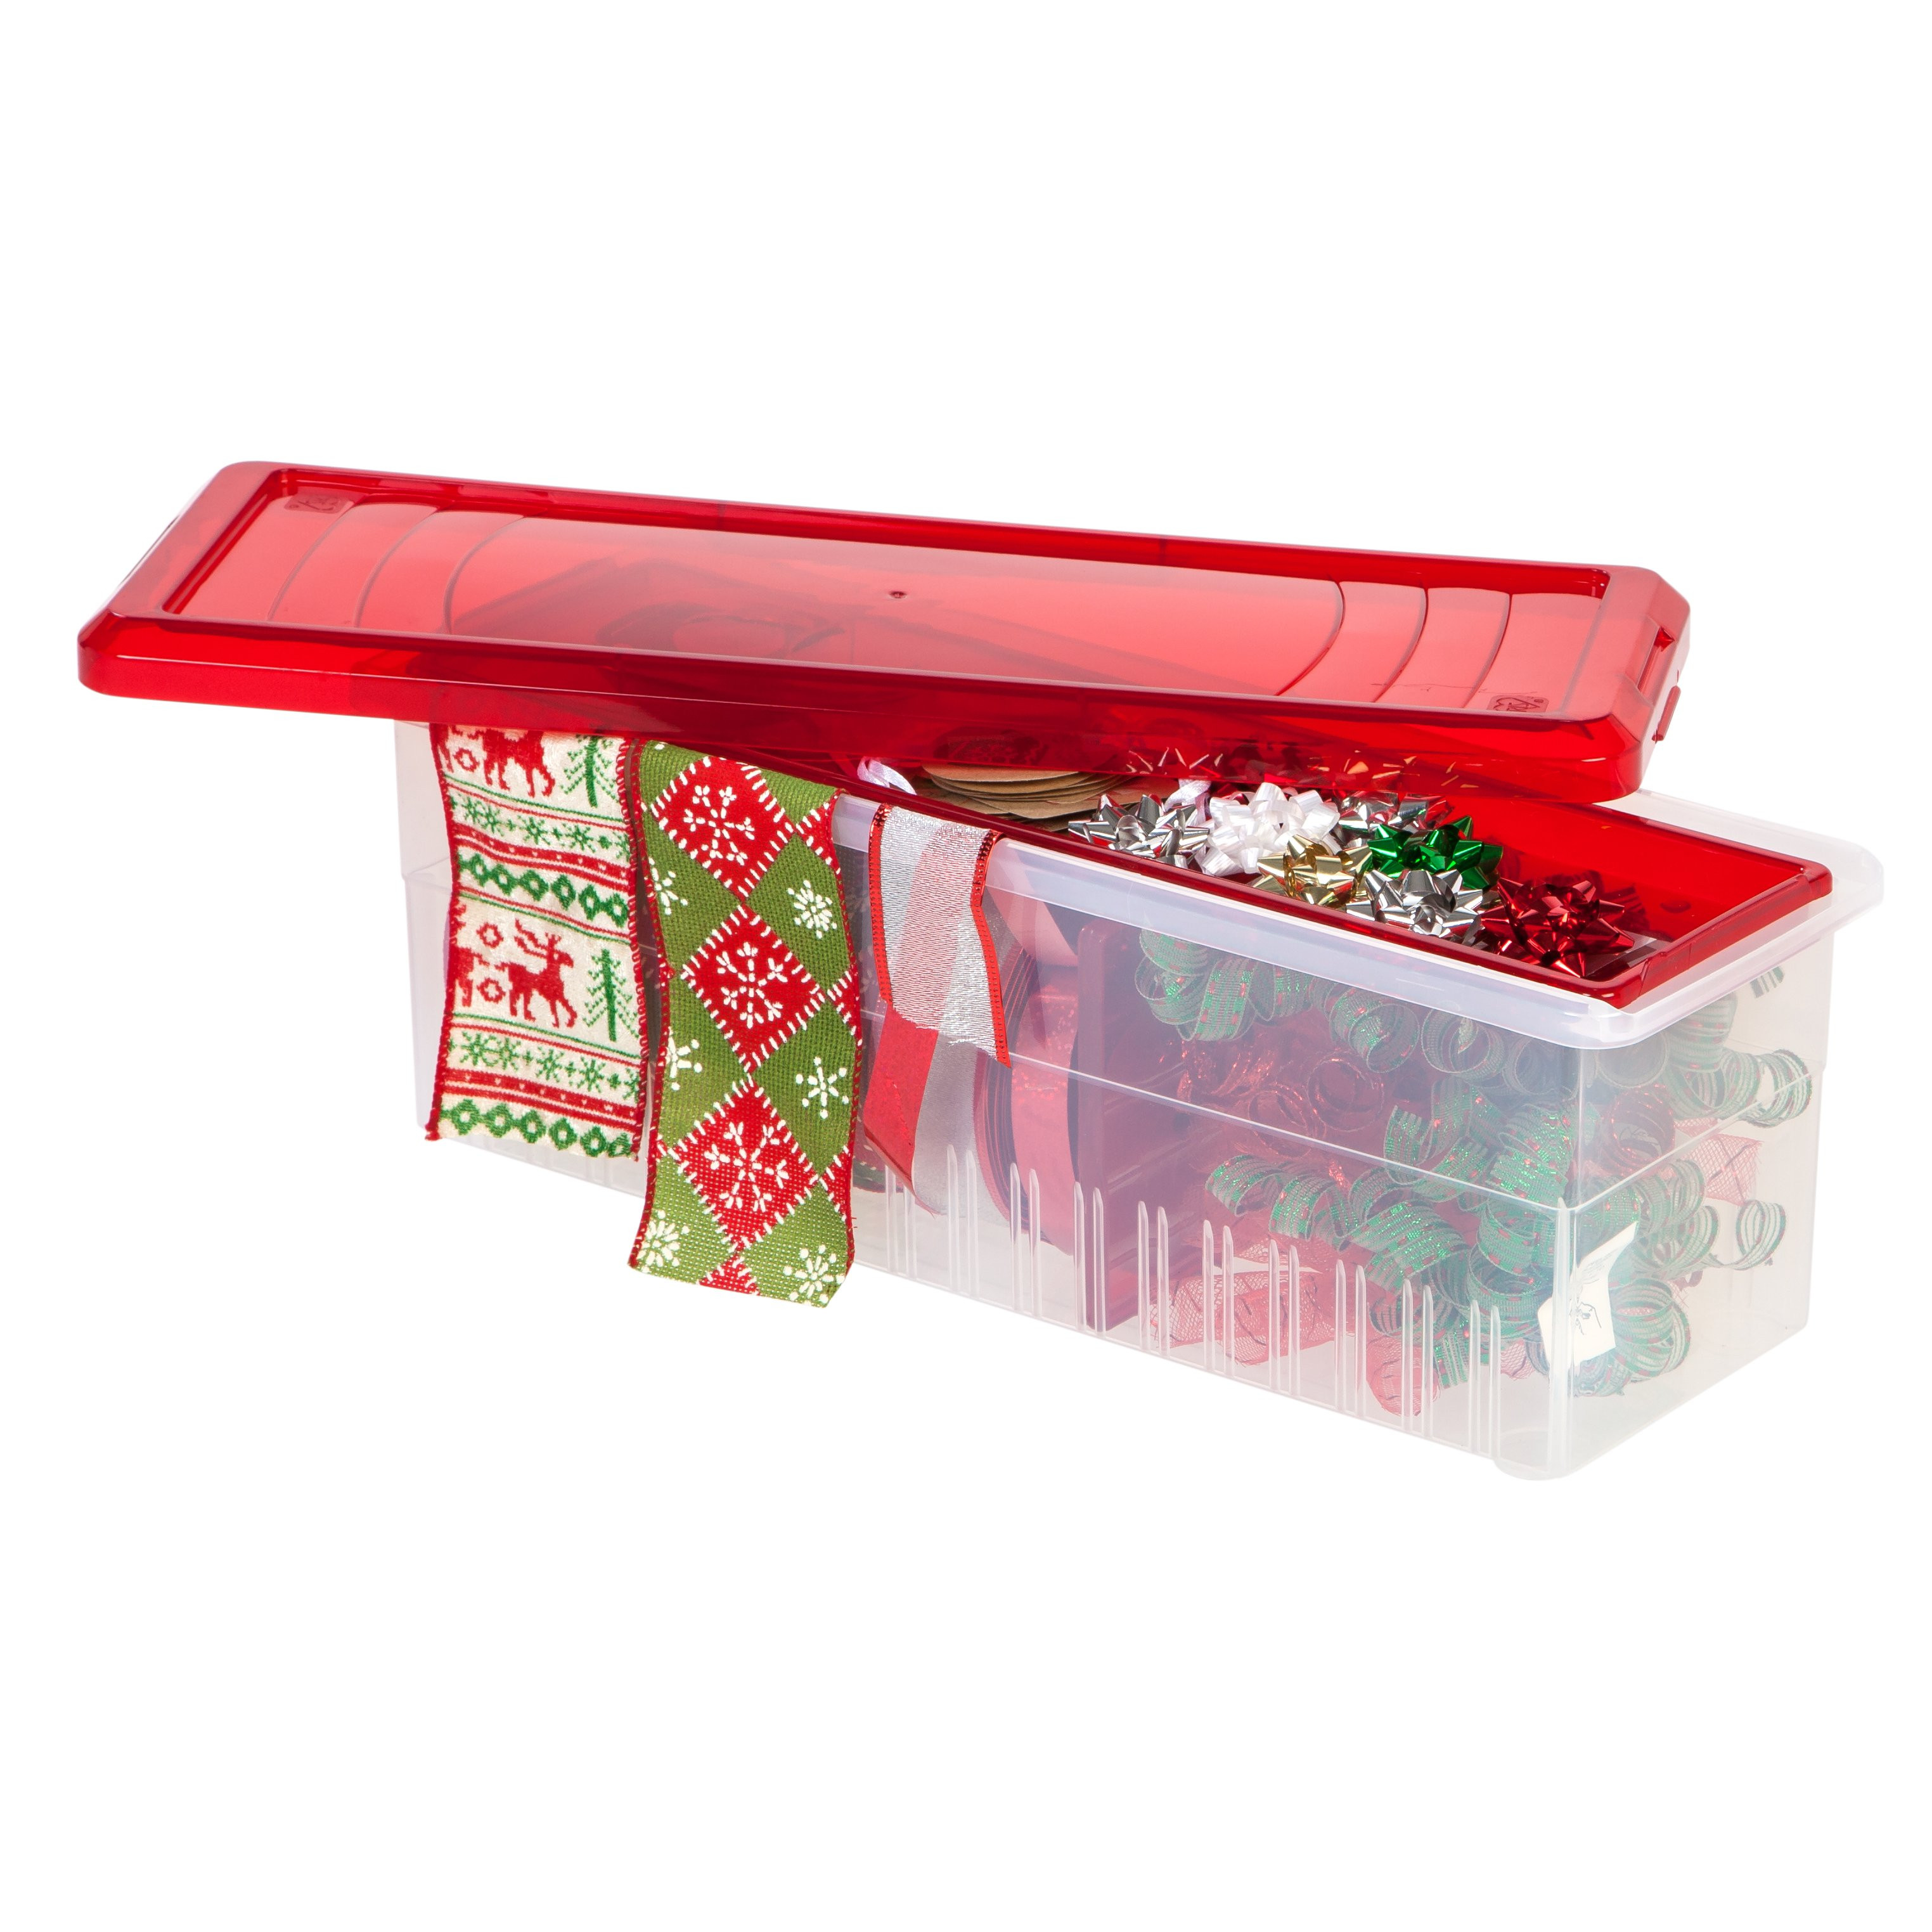 Iris Christmas Tree Storage Box
 IRIS Ribbon Storage Box & Reviews